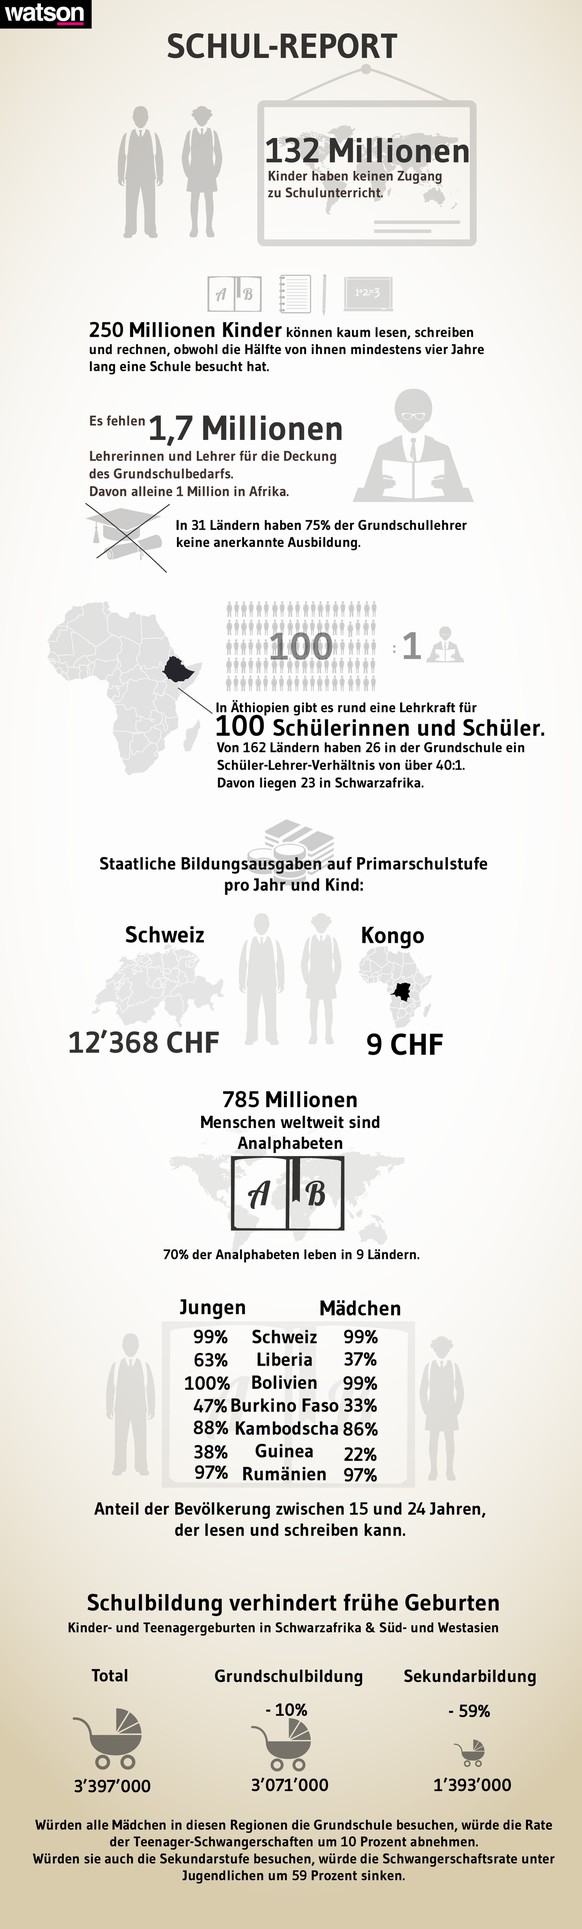 Quellen: Unicef, Stiftung Kinderdorf Pestalozzi, Weltbildungsbericht, Wikipedia.